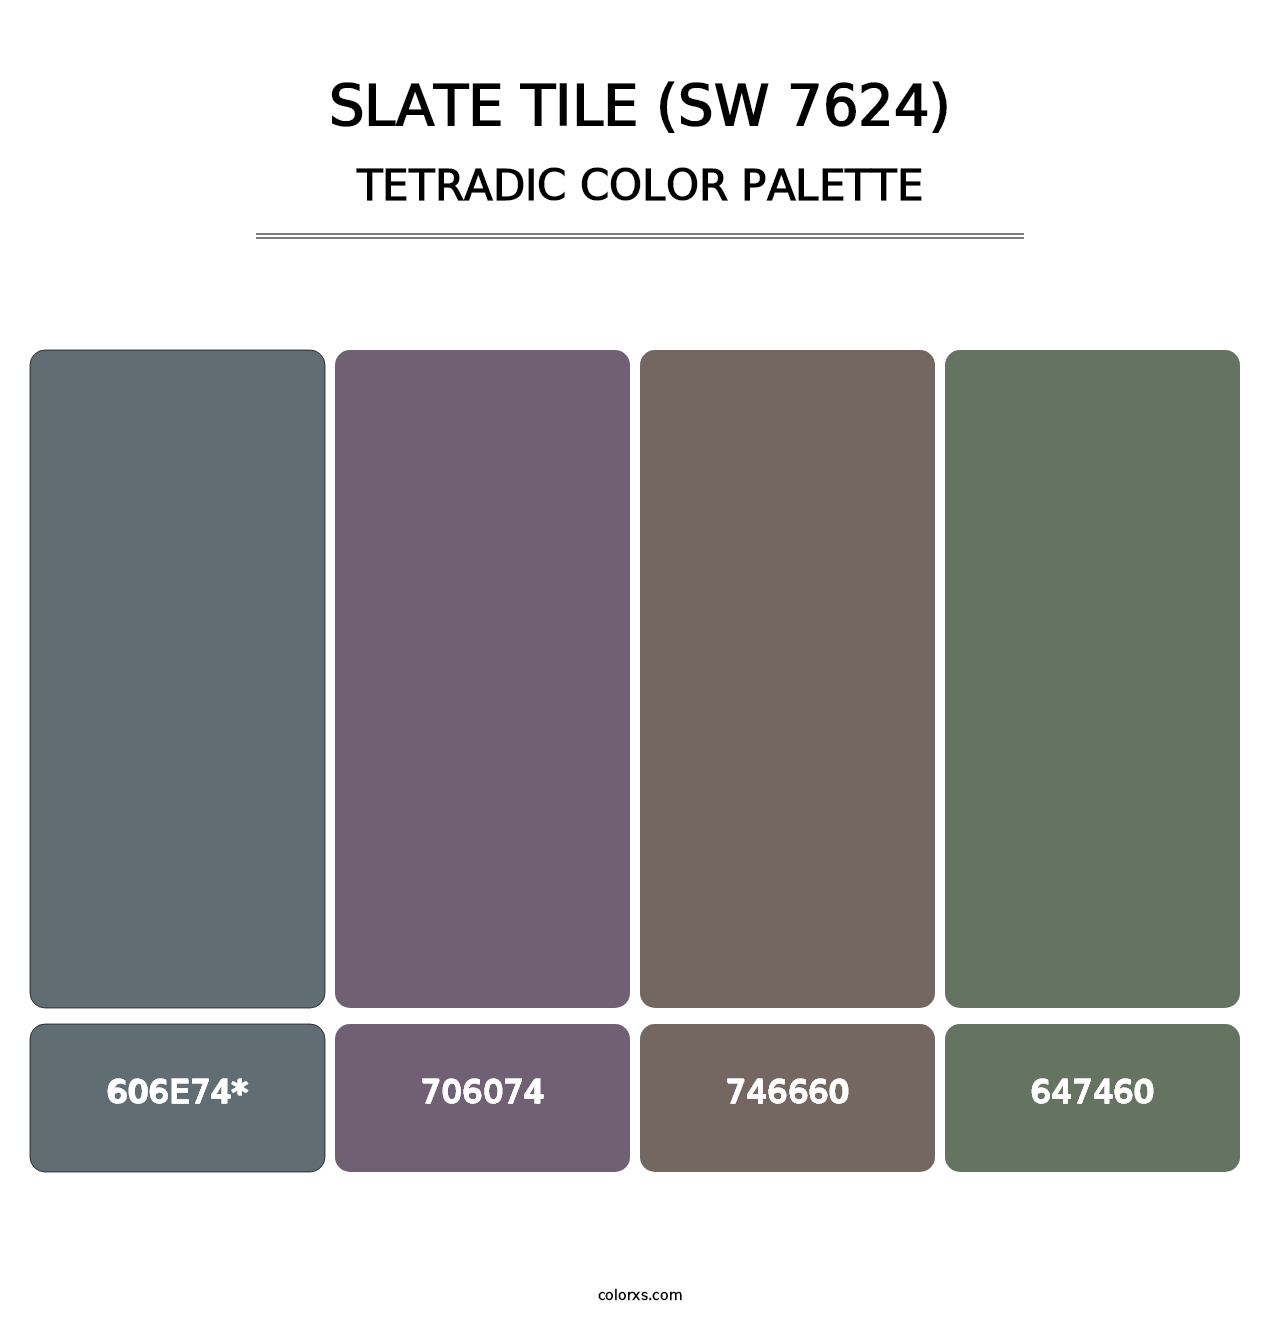 Slate Tile (SW 7624) - Tetradic Color Palette